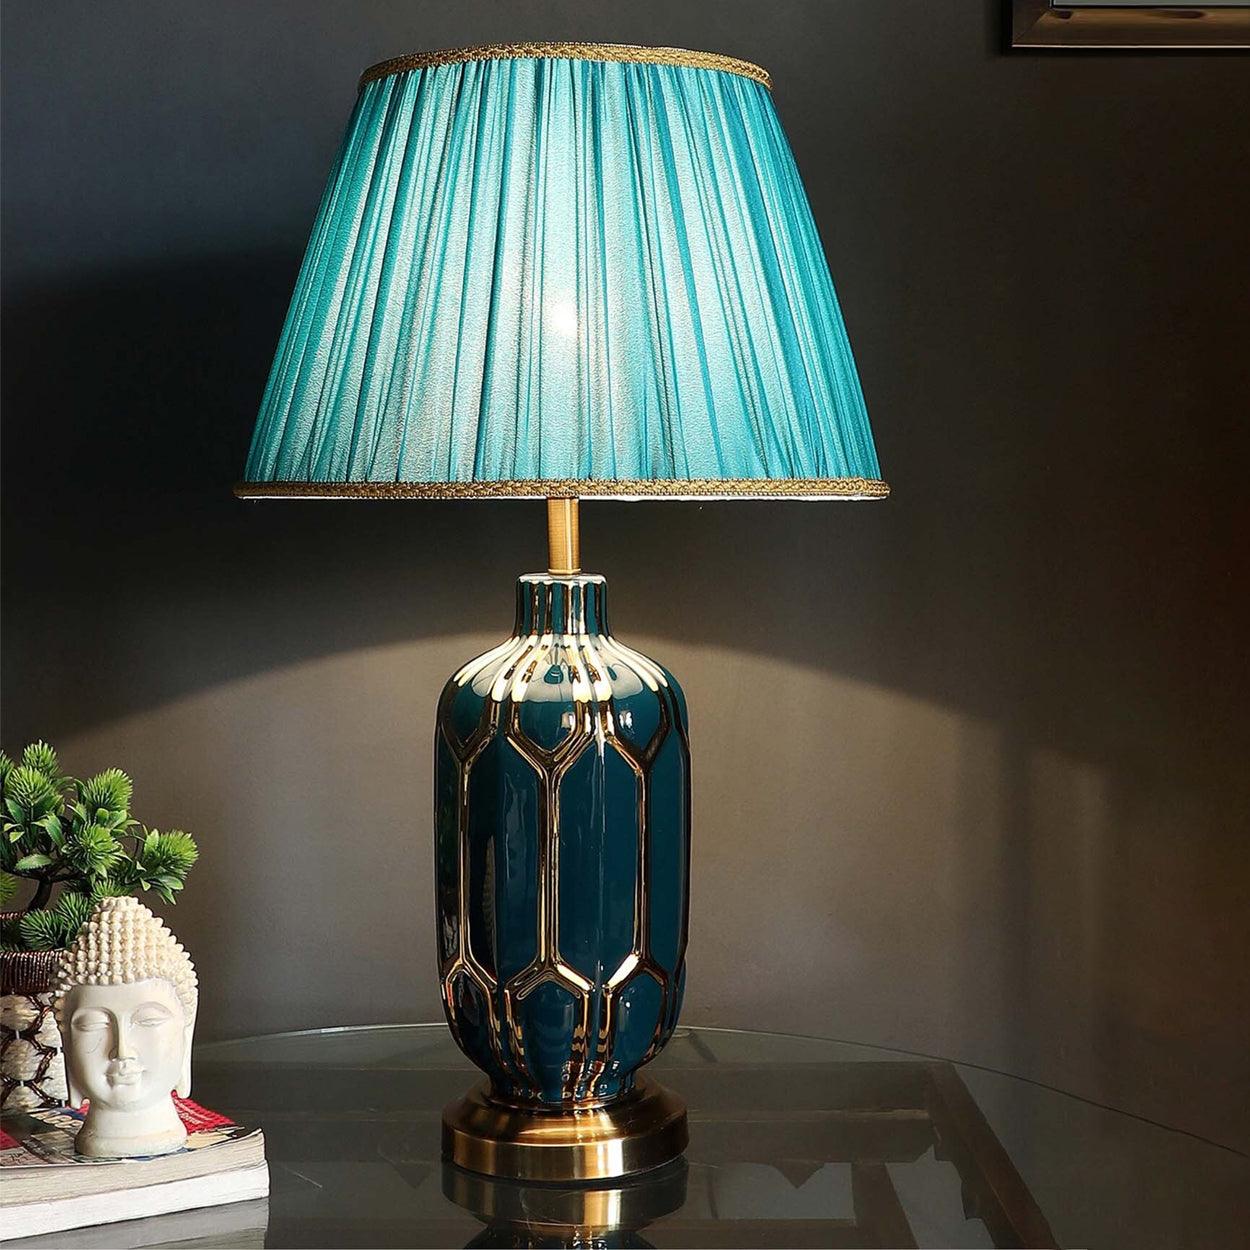 BLEEN CERAMIC TABLE LAMP BEDSIDE LAMP - Ankur Lighting